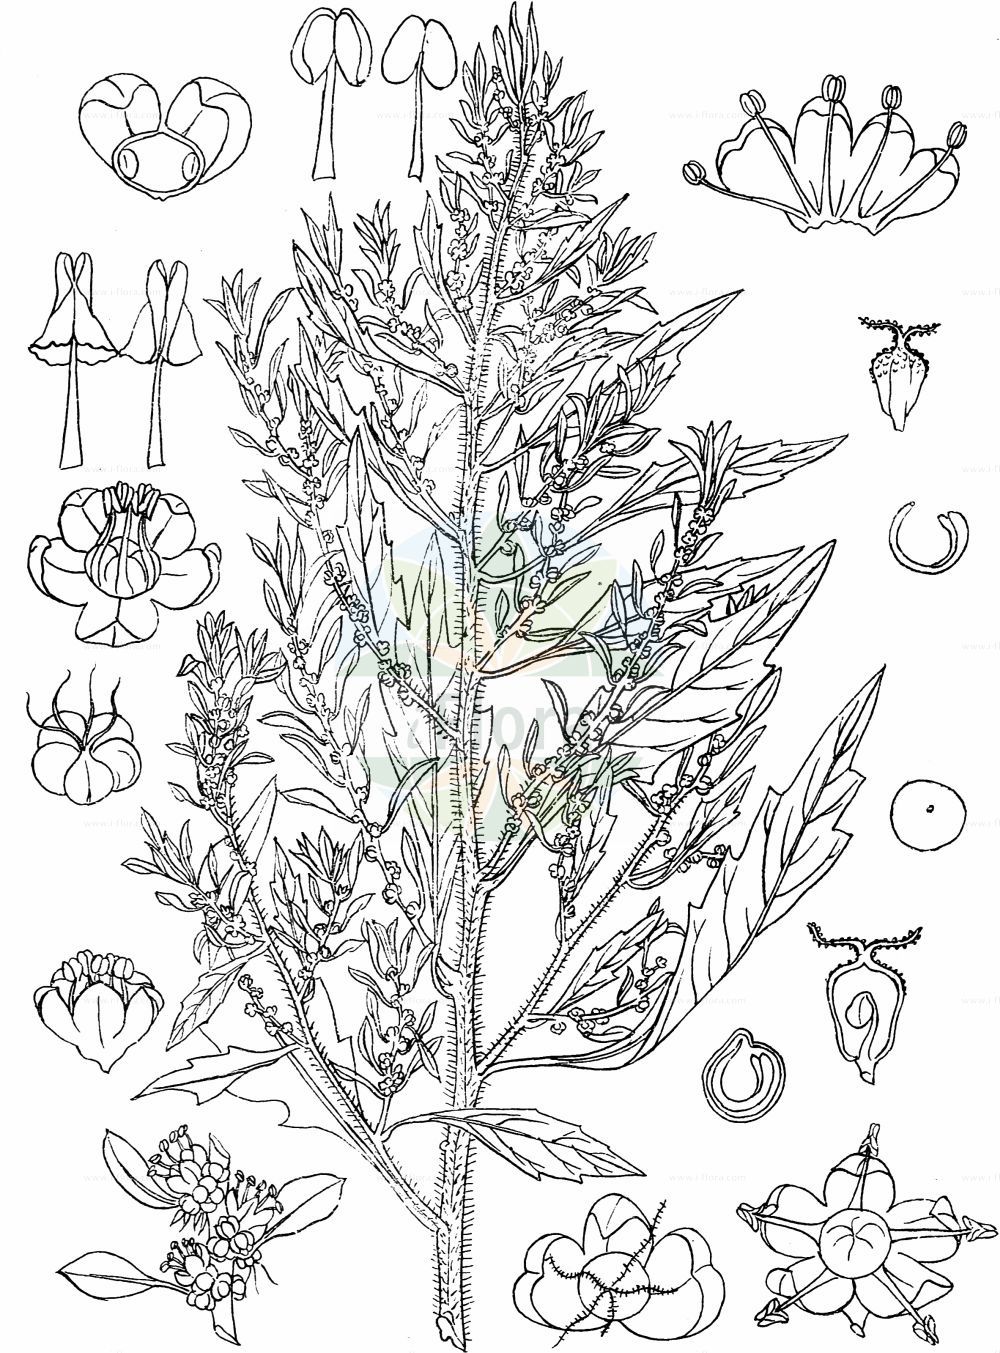 Historische Abbildung von Dysphania ambrosioides (Duft-Drüsengänsefuß - Mexican-tea). Das Bild zeigt Blatt, Bluete, Frucht und Same. ---- Historical Drawing of Dysphania ambrosioides (Duft-Drüsengänsefuß - Mexican-tea). The image is showing leaf, flower, fruit and seed.(Dysphania ambrosioides,Duft-Drüsengänsefuß,Mexican-tea,Chenopodium ambrosioides,Chenopodium integrifolium,Chenopodium suffruticosum,Dysphania ambrosioides,Duft-Druesengaensefuss,Duft-Gaensefuss,Mexikanischer Gaensefuss,Mexikanisches Teekraut,Taubenkrautaehnlicher Gaensefuss,Tee-Gaensefuss,Mexican-tea,Indian Goosefoot,Wormseed,Dysphania,Drüsengänsefuß,Goosefoot,Amaranthaceae,Fuchsschwanzgewächse,Pigweed family,Blatt,Bluete,Frucht,Same,leaf,flower,fruit,seed,Kirtikar & Basu (1918))